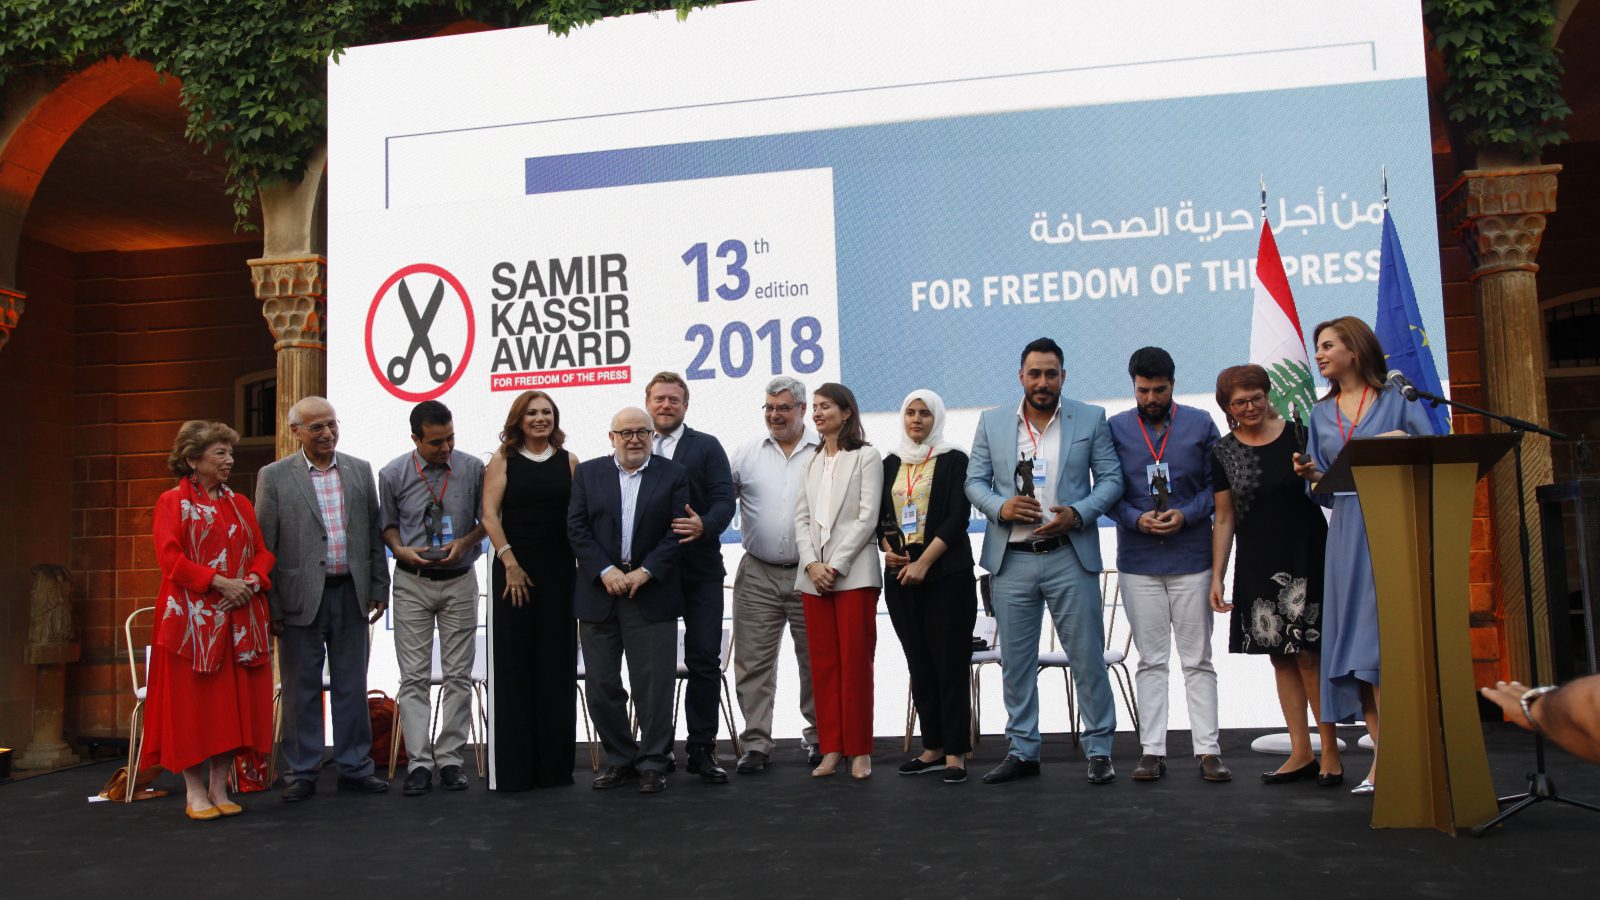 جائزة سمير قصير لحرية الصحافة التي يمولها الاتحاد الأوروبي